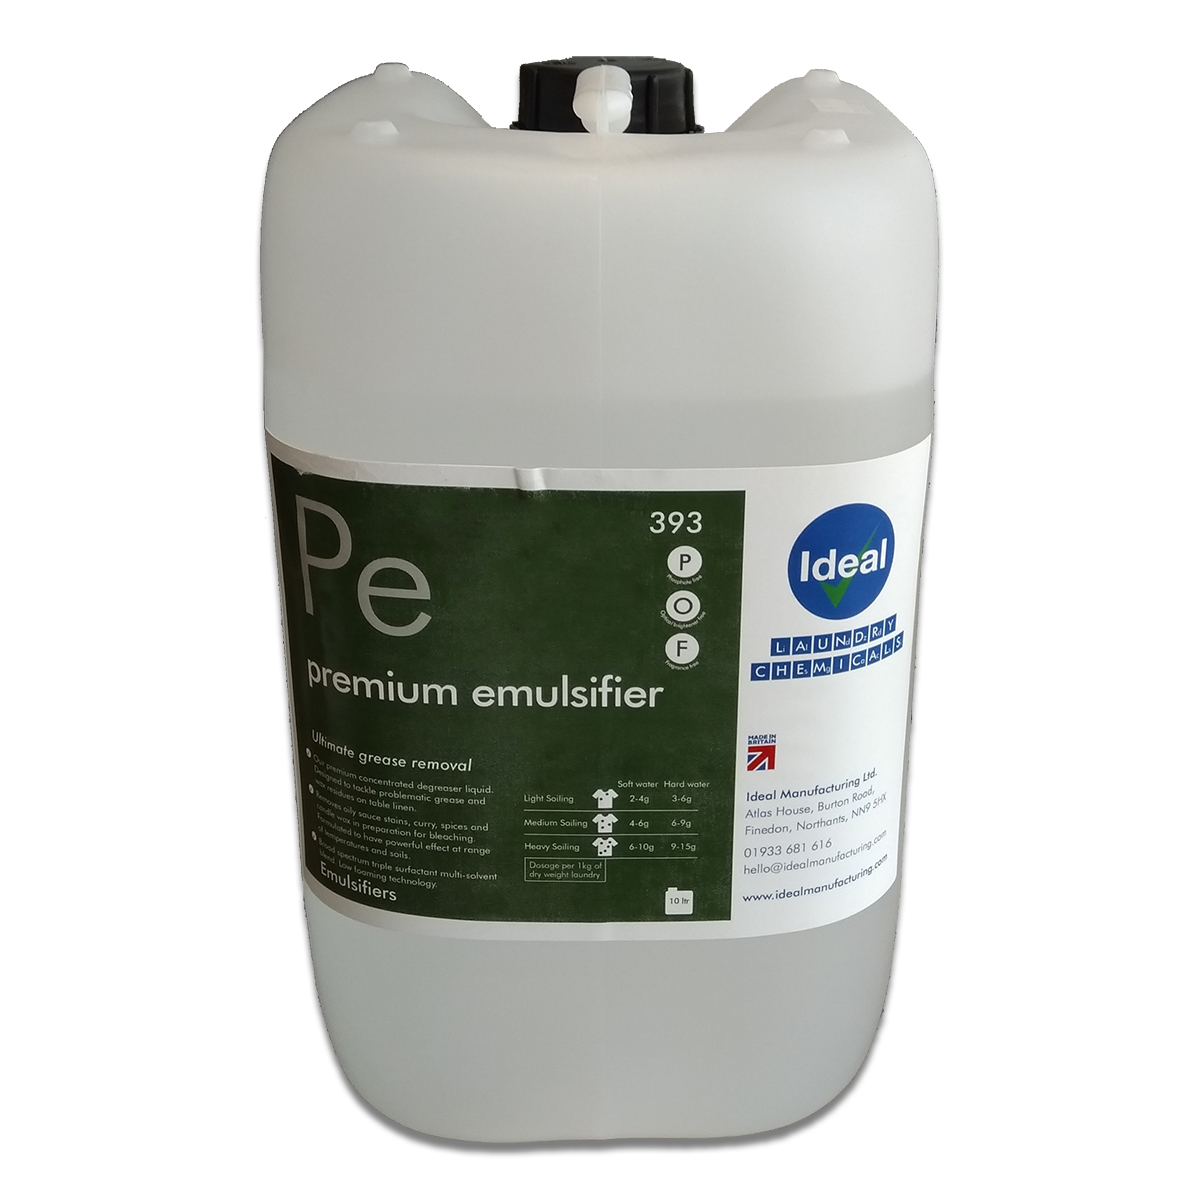 Cater-Wash CK0795 10 Litre Premium Emulsifier De Greaser Detergent